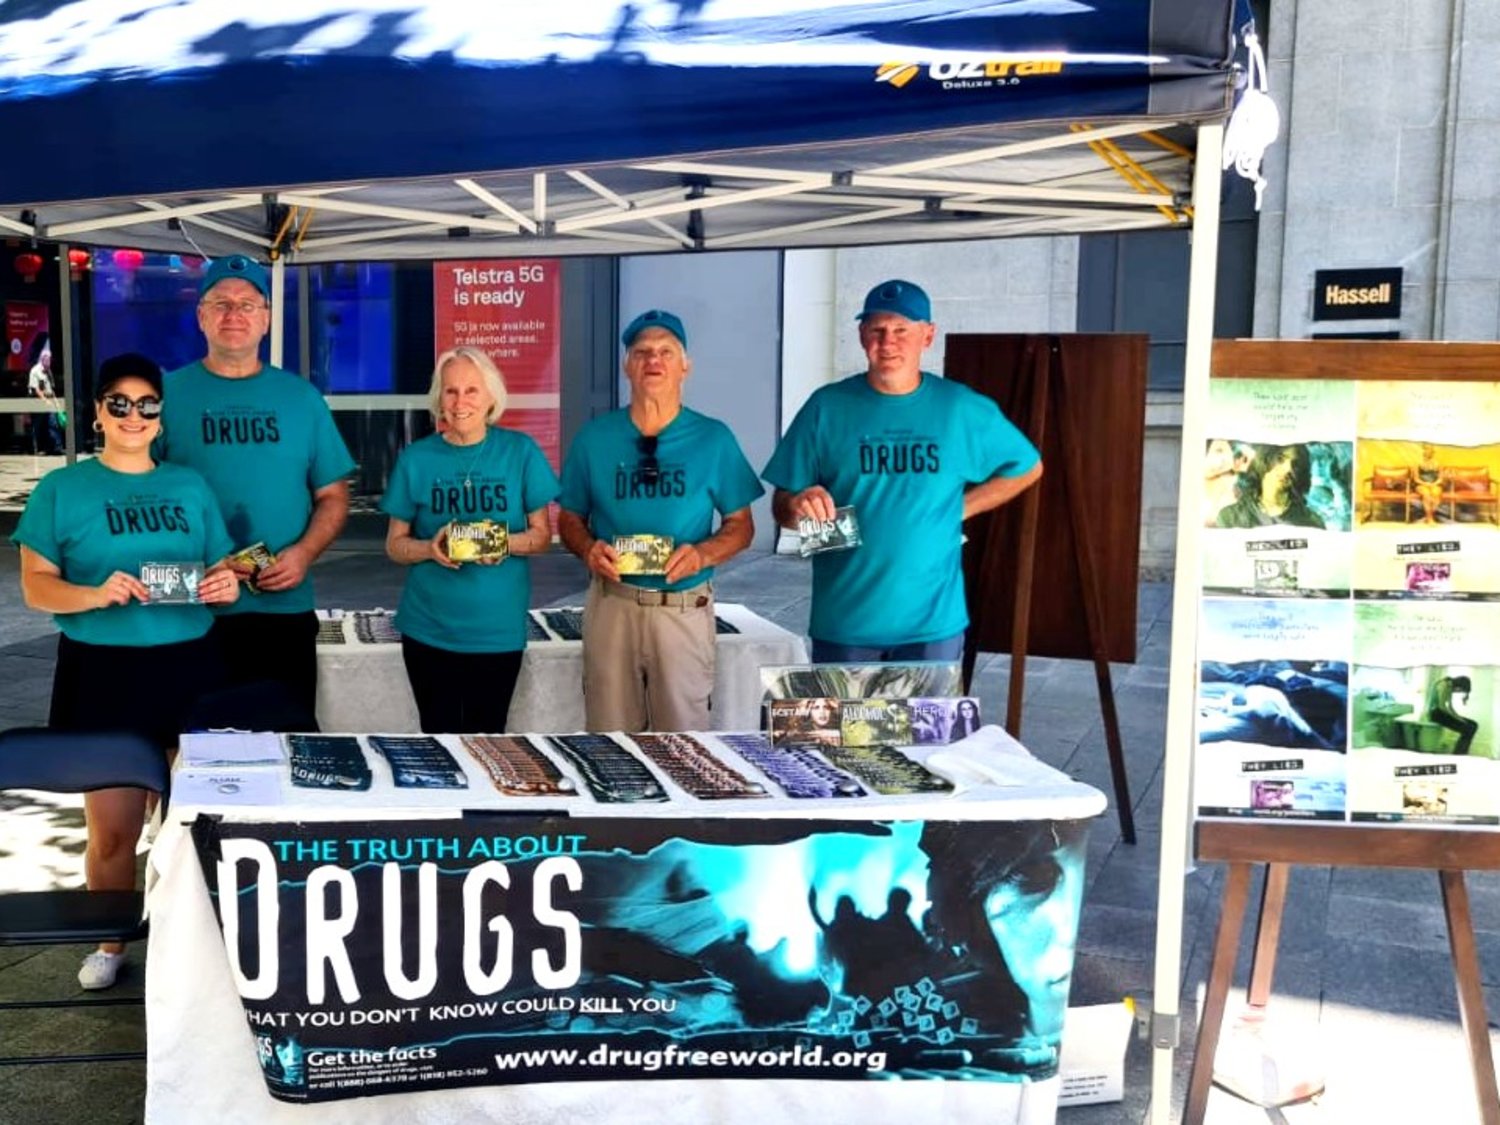 Scientologové ze Scientologické církve v Perthu měli kopie brožur obsahujících 14 nejčastěji zneužívaných drog včetně alkoholu.